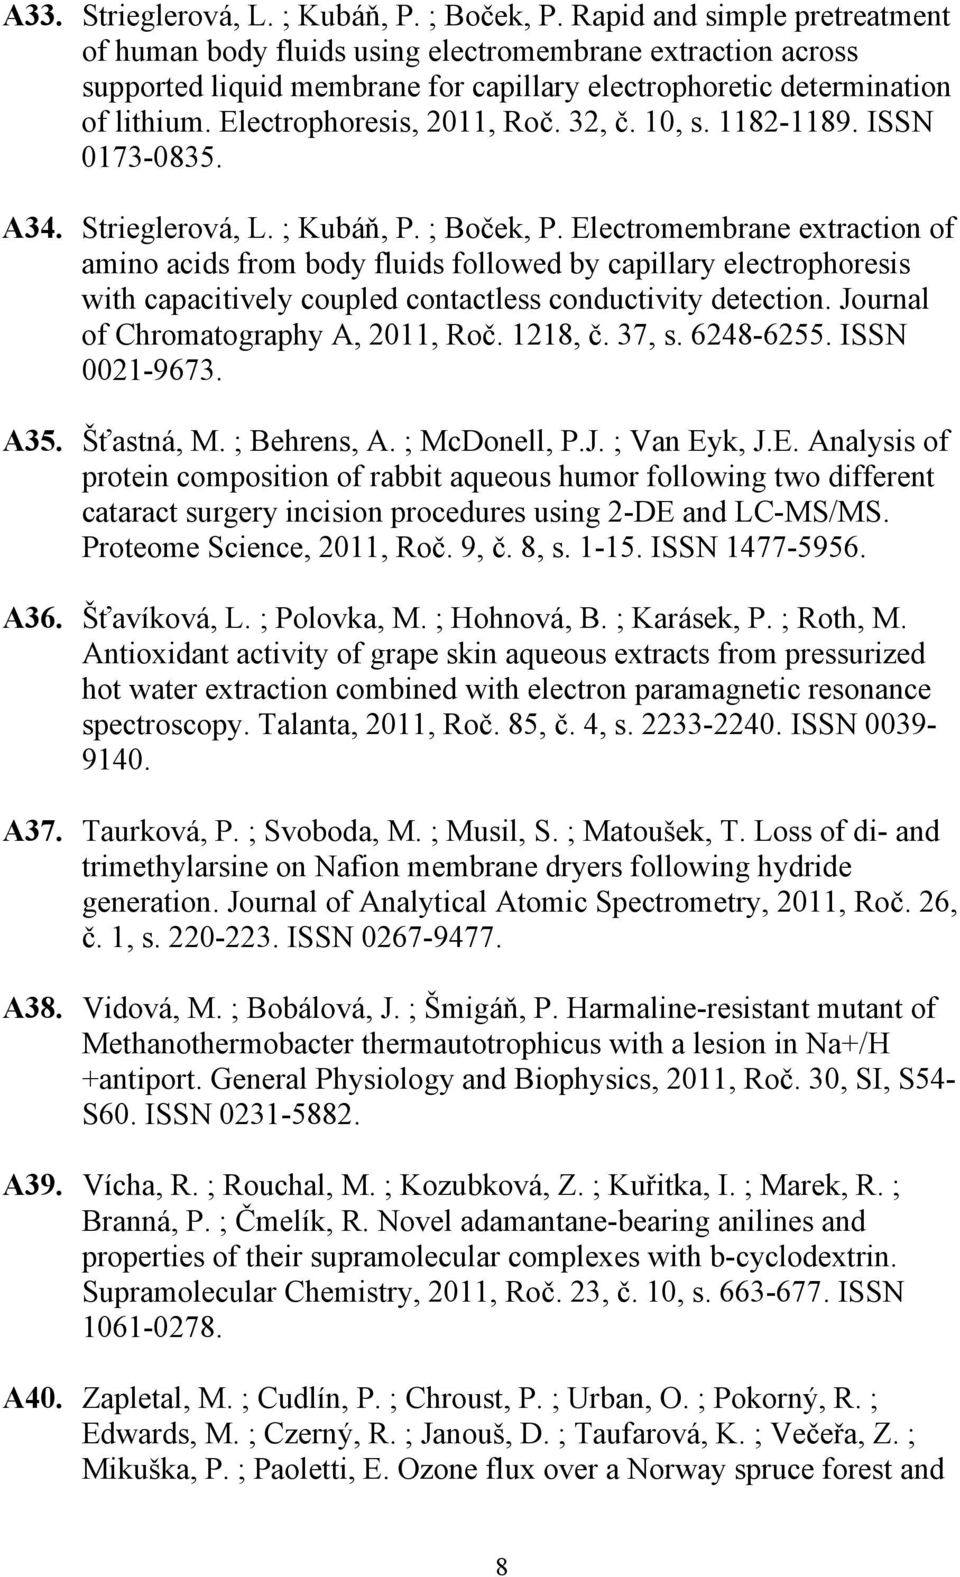 32, č. 10, s. 1182-1189. ISSN 0173-0835. A34. Strieglerová, L. ; Kubáň, P. ; Boček, P.